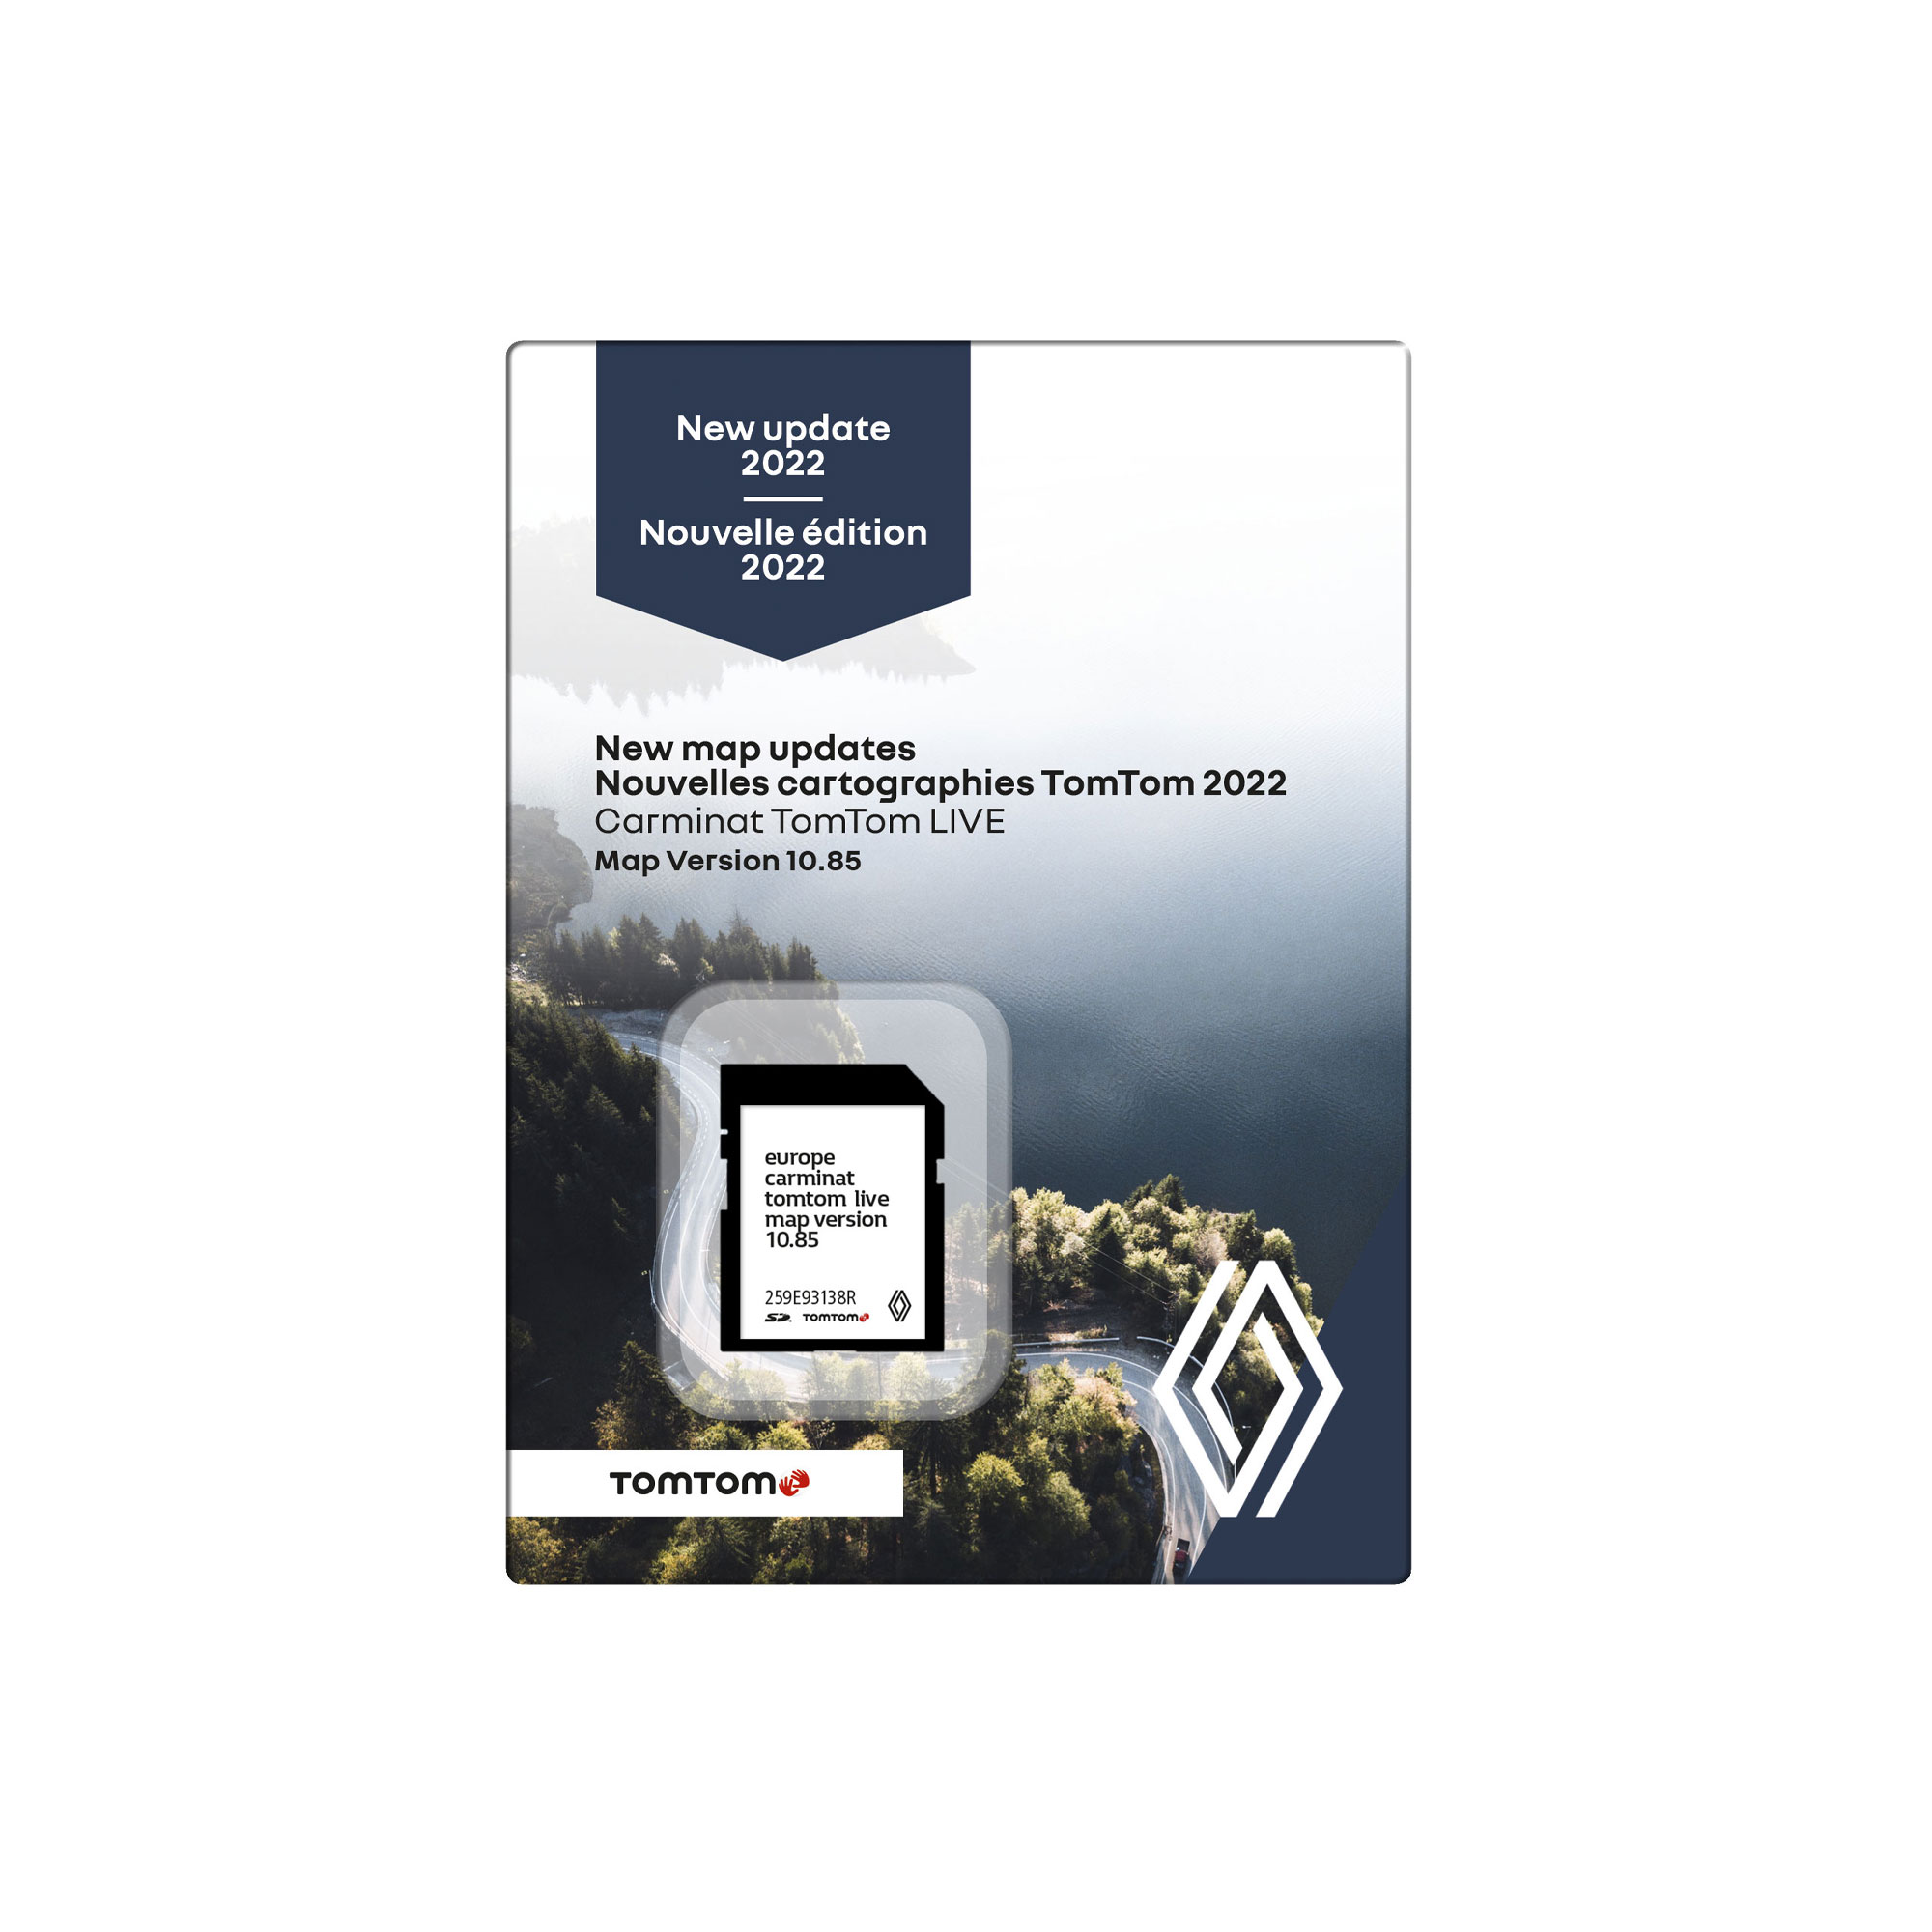 RENAULT SD CARD Tomtom Carminat Live V10.05 Maps EU Turkey 2018-2019 